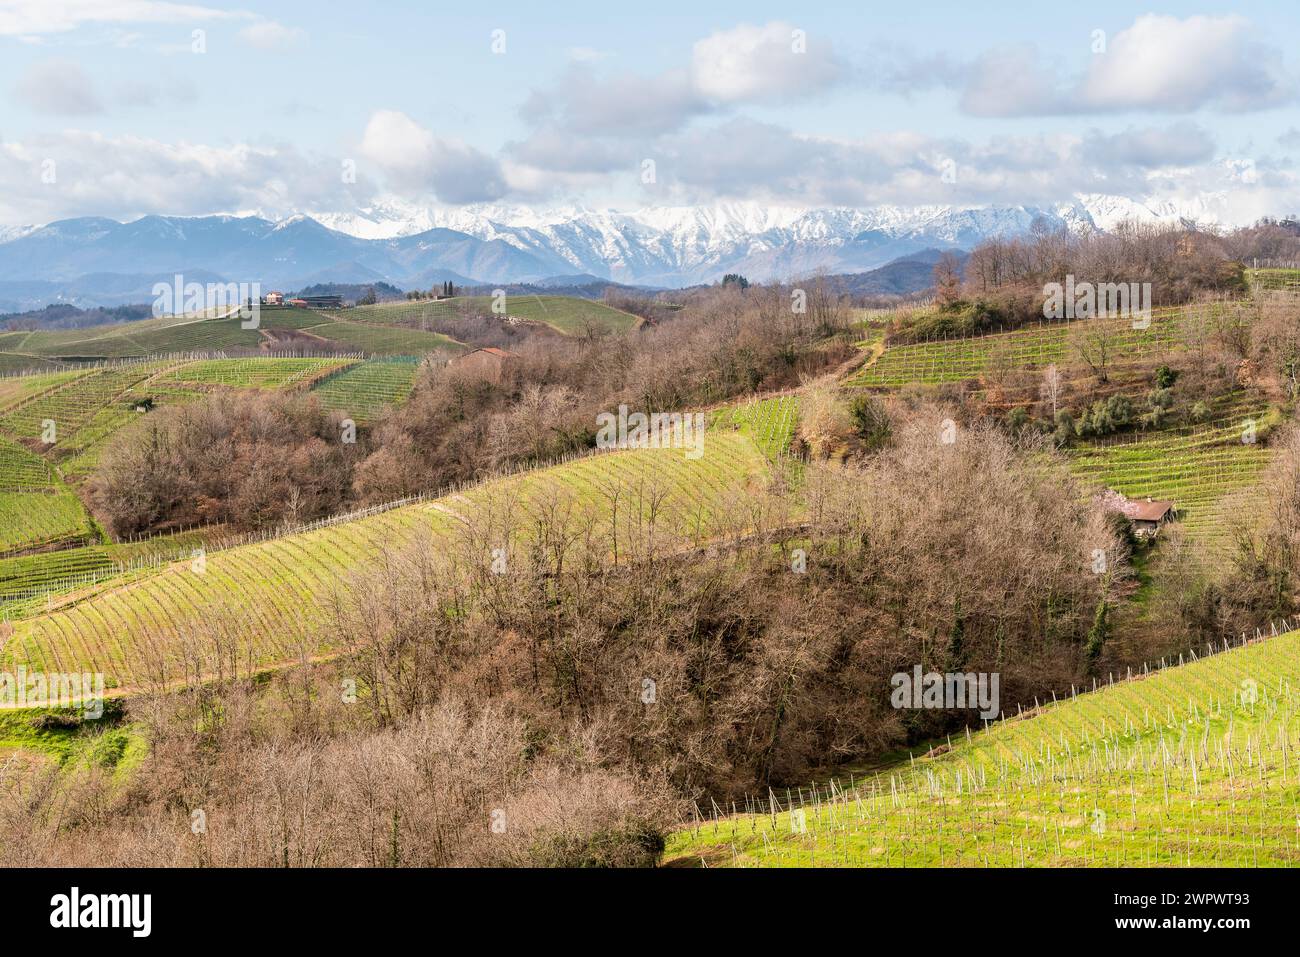 Paesaggio delle colline viticole di Gattinara con catena del Monte Rosa innevata sullo sfondo, provincia di Vercelli, Piemonte, Italia Foto Stock